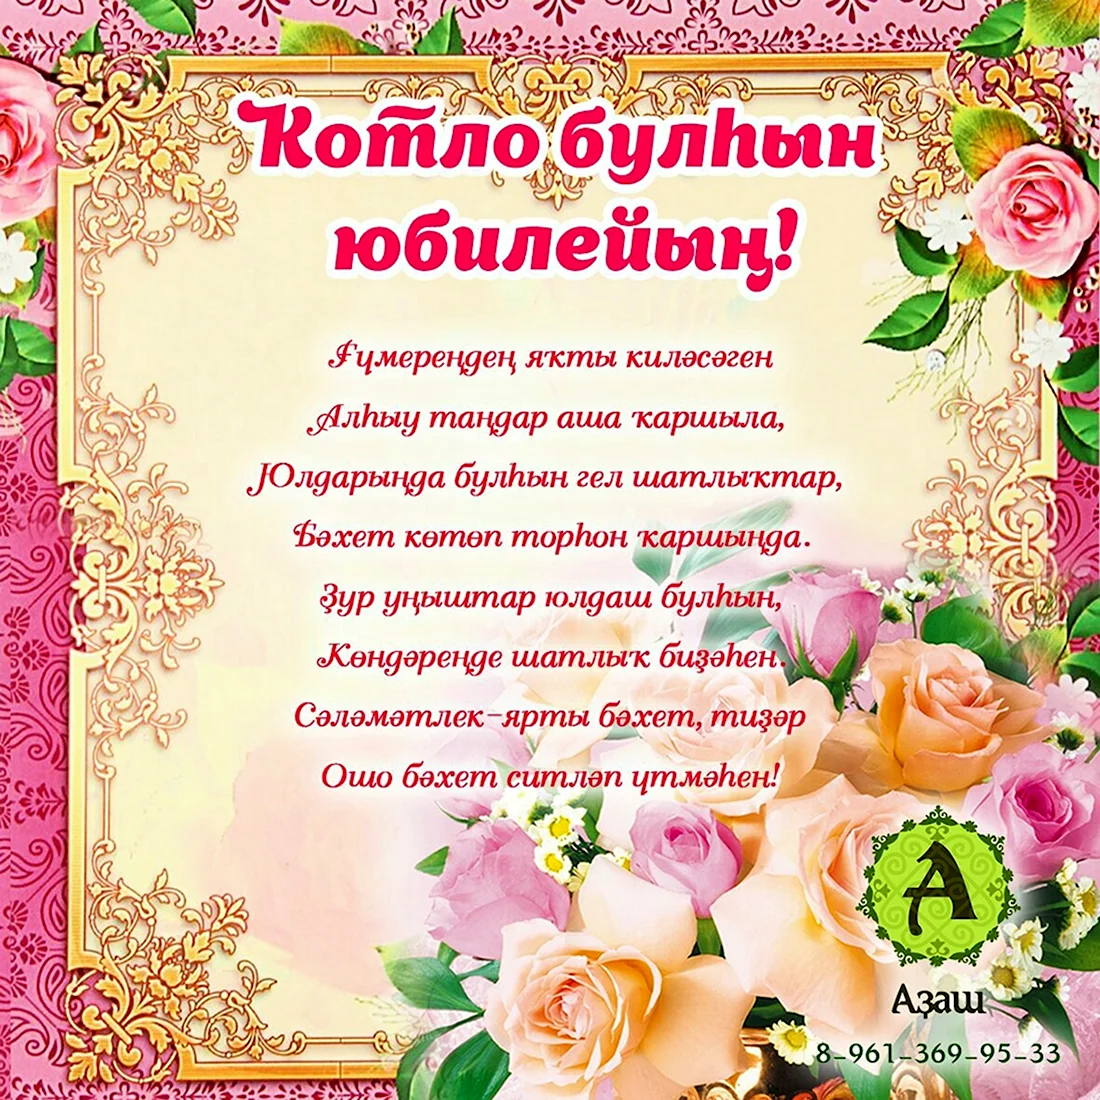 Поздравление с юбилеем мужчине на башкирском языке